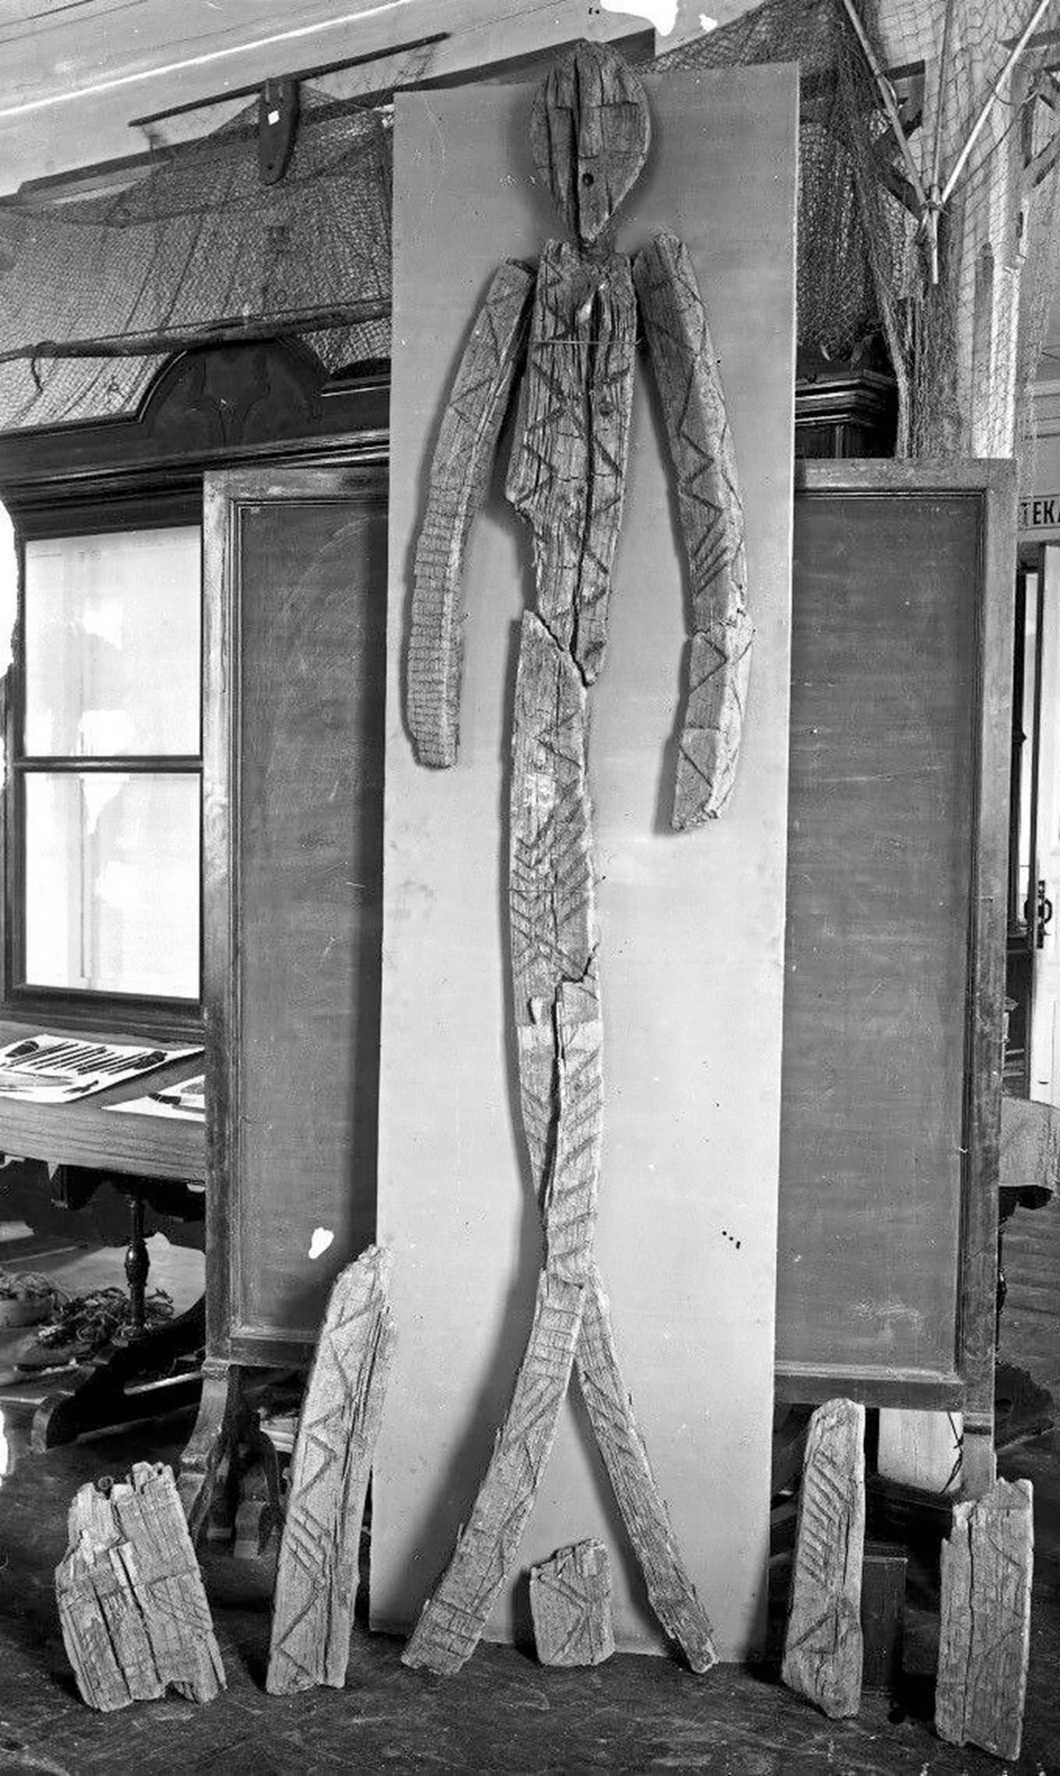 Uma reconstrução inicial do Shigir Idol de 1894. Foto cortesia do Museu Regional de Sverdlovsk.